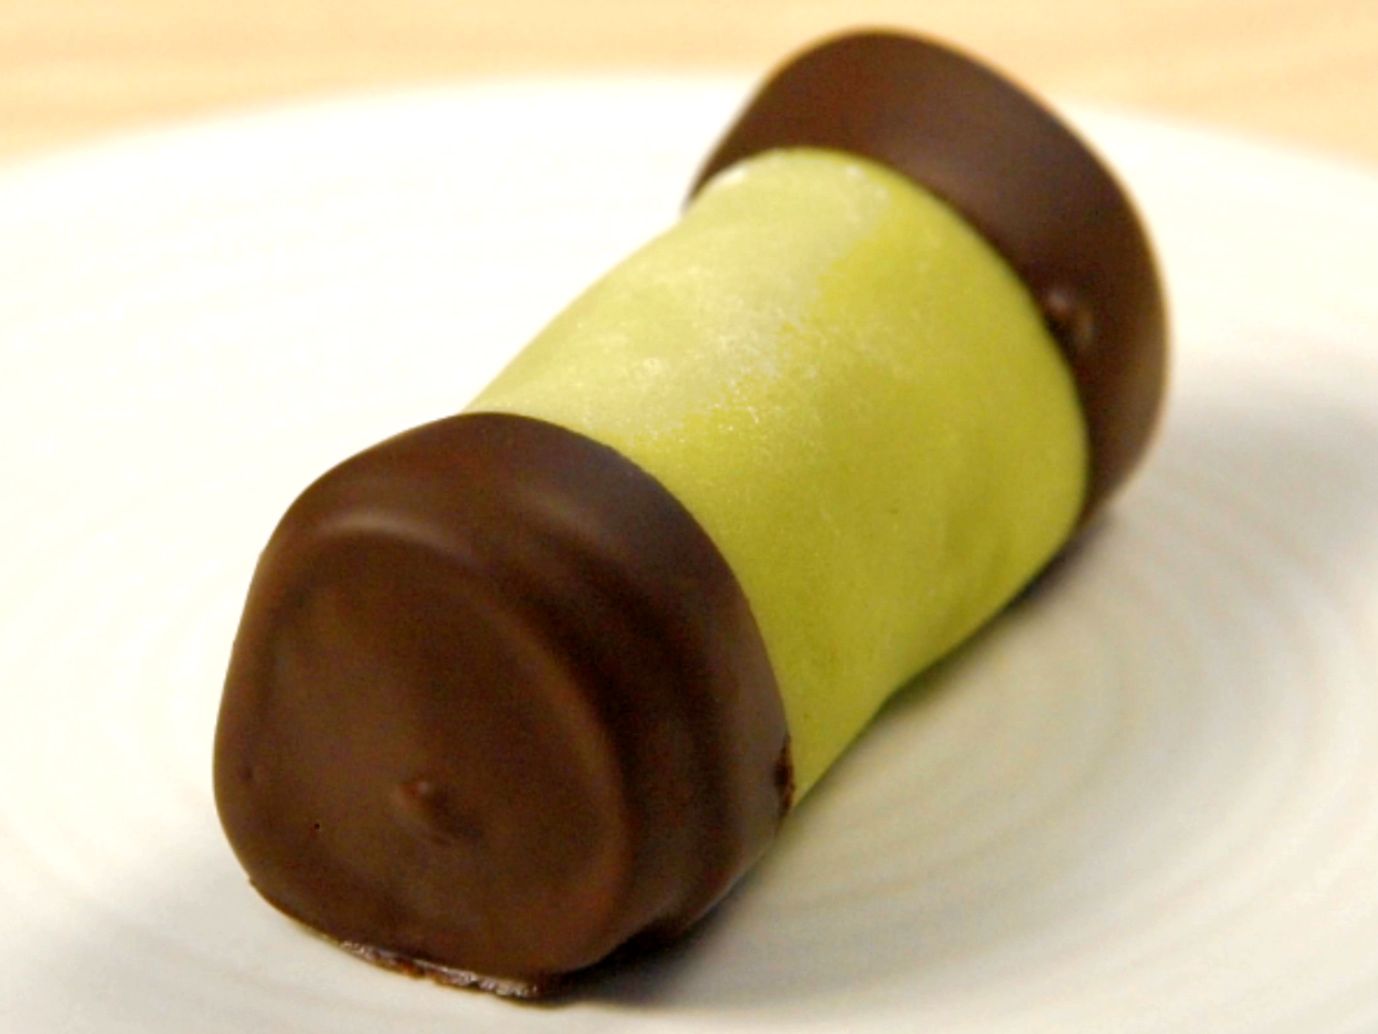 Punschrulle eller dammsugare -– marsipan och choklad i kombination.